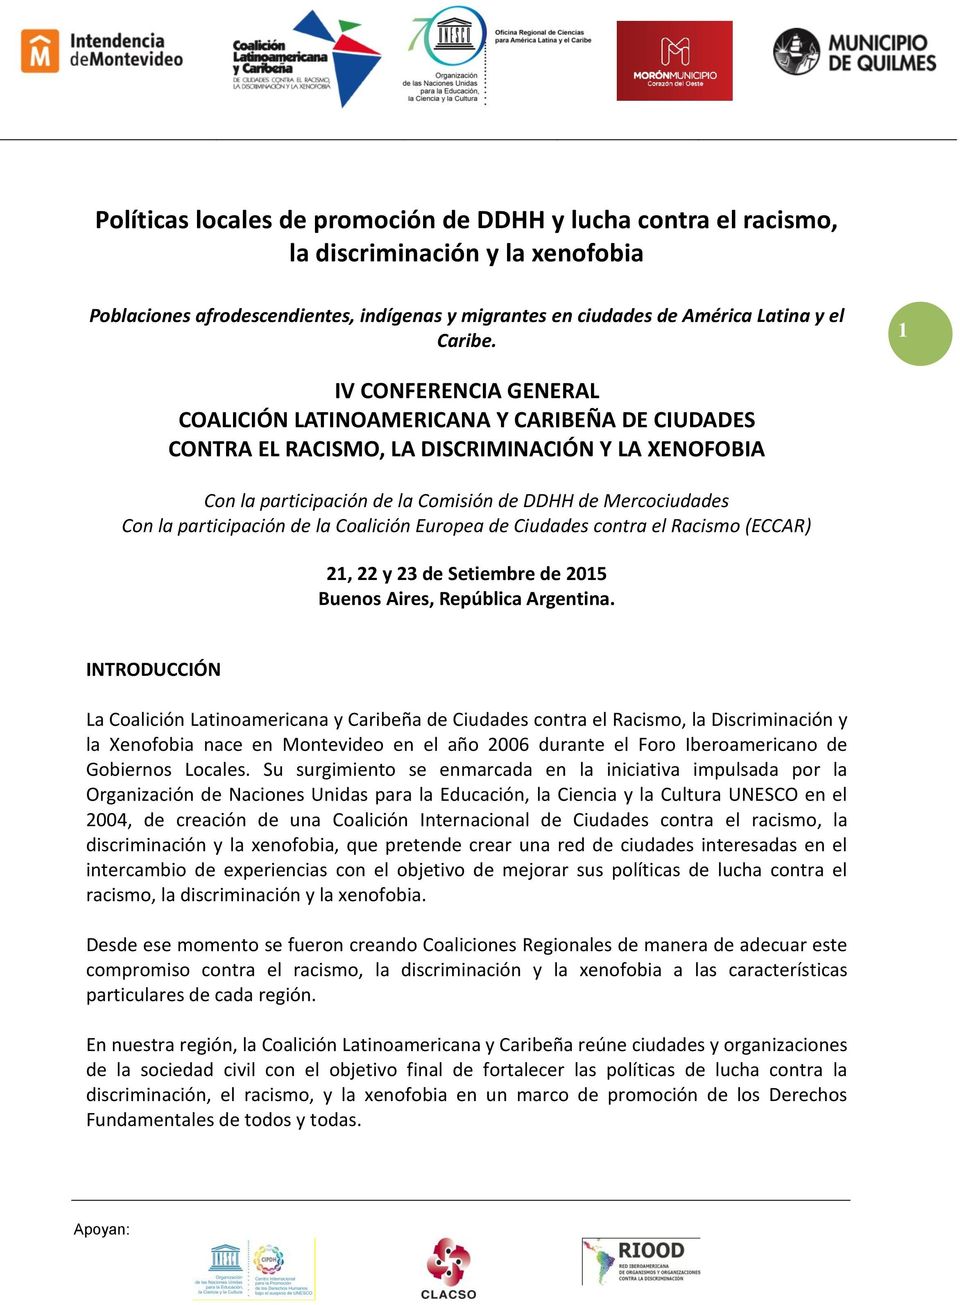 participación de la Coalición Europea de Ciudades contra el Racismo (ECCAR) 21, 22 y 23 de Setiembre de 2015 Buenos Aires, República Argentina.